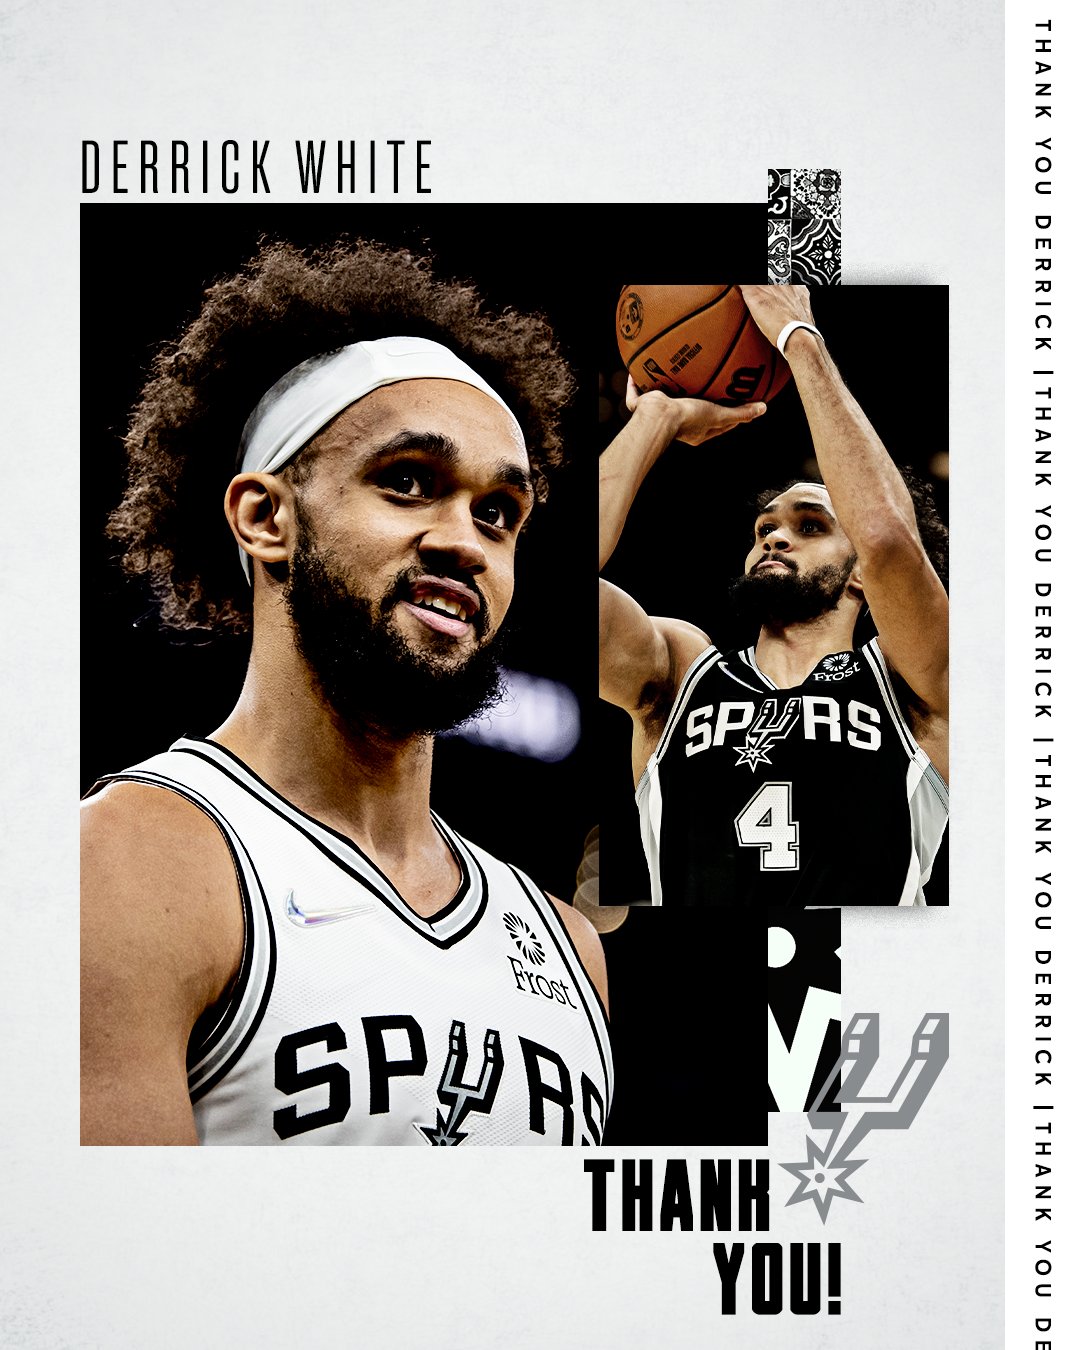 Spurs fan art: Derrick White featured